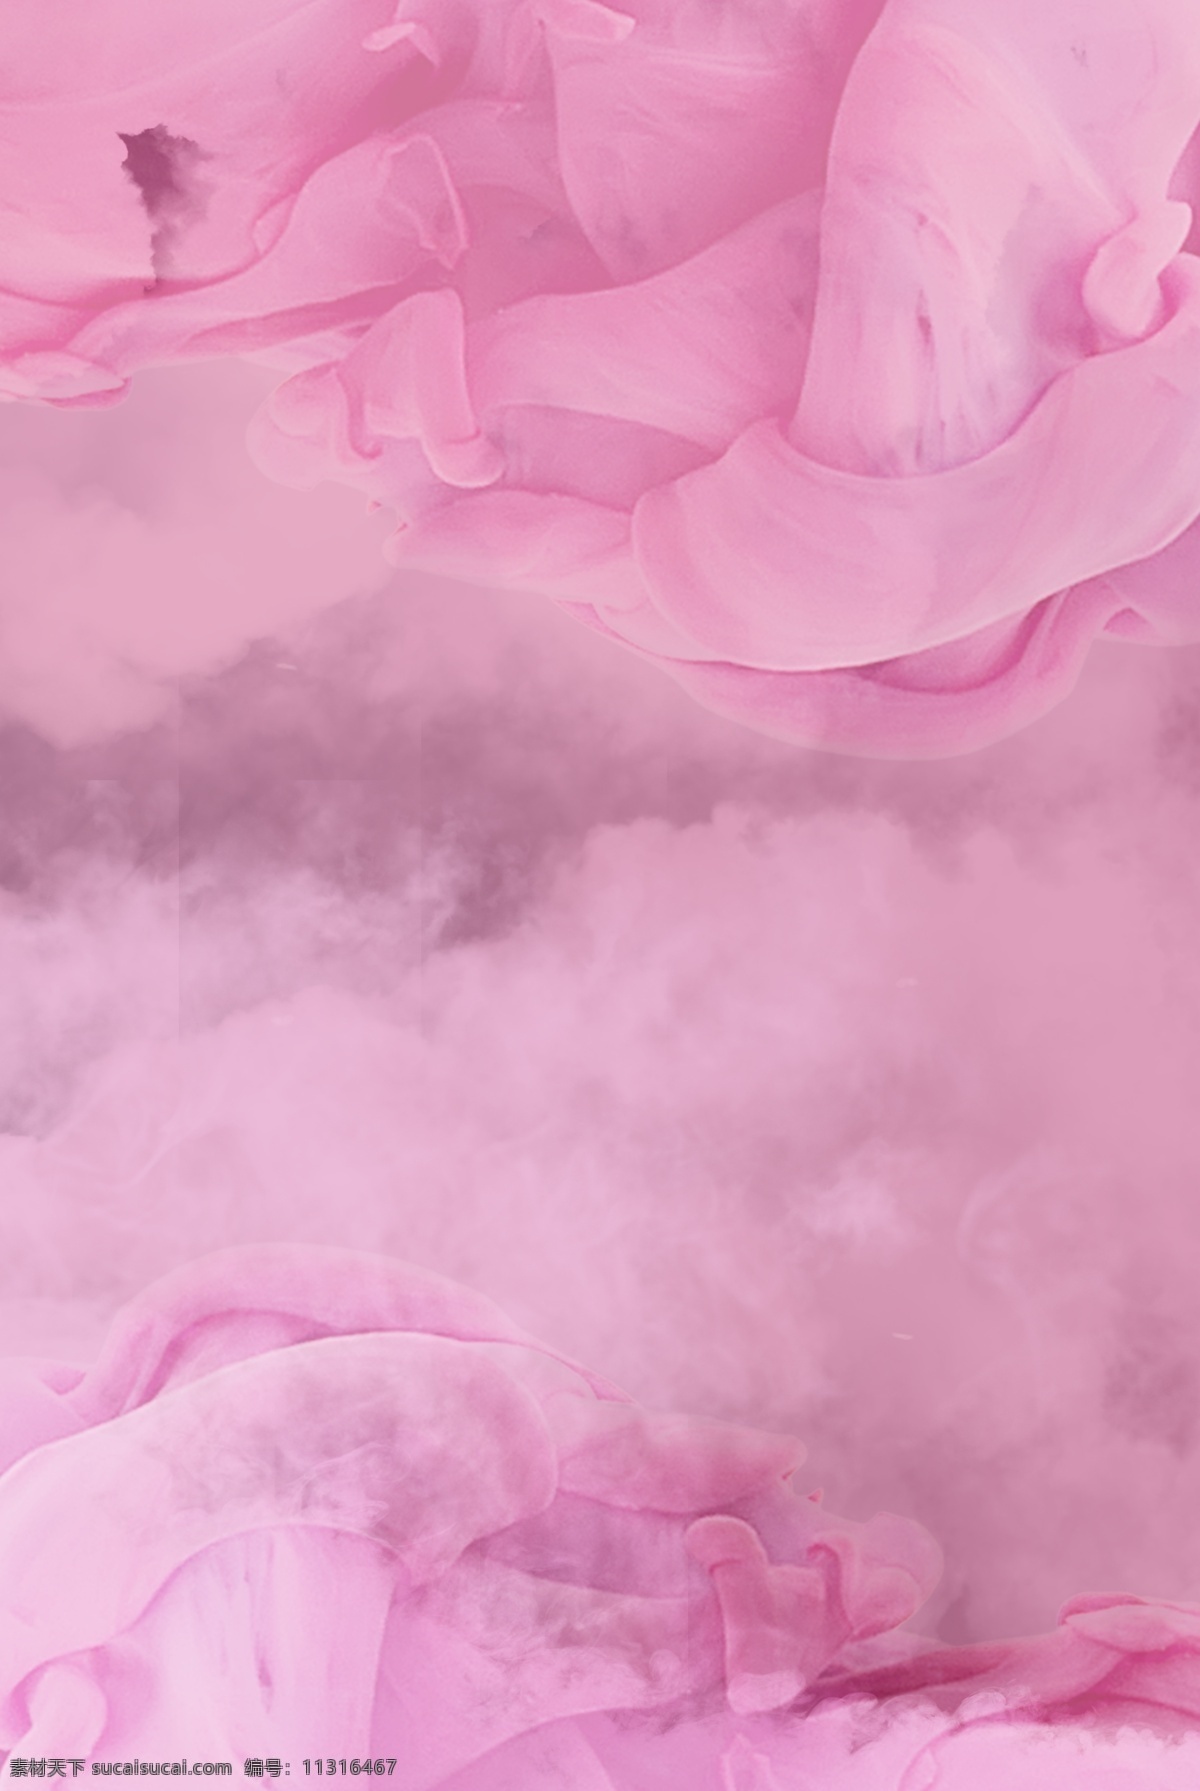 粉色 渐变 烟雾 渲染 唯美 背景 海报 烟雾渲染 背景海报 粉色渐变 小清新 烟雾效果